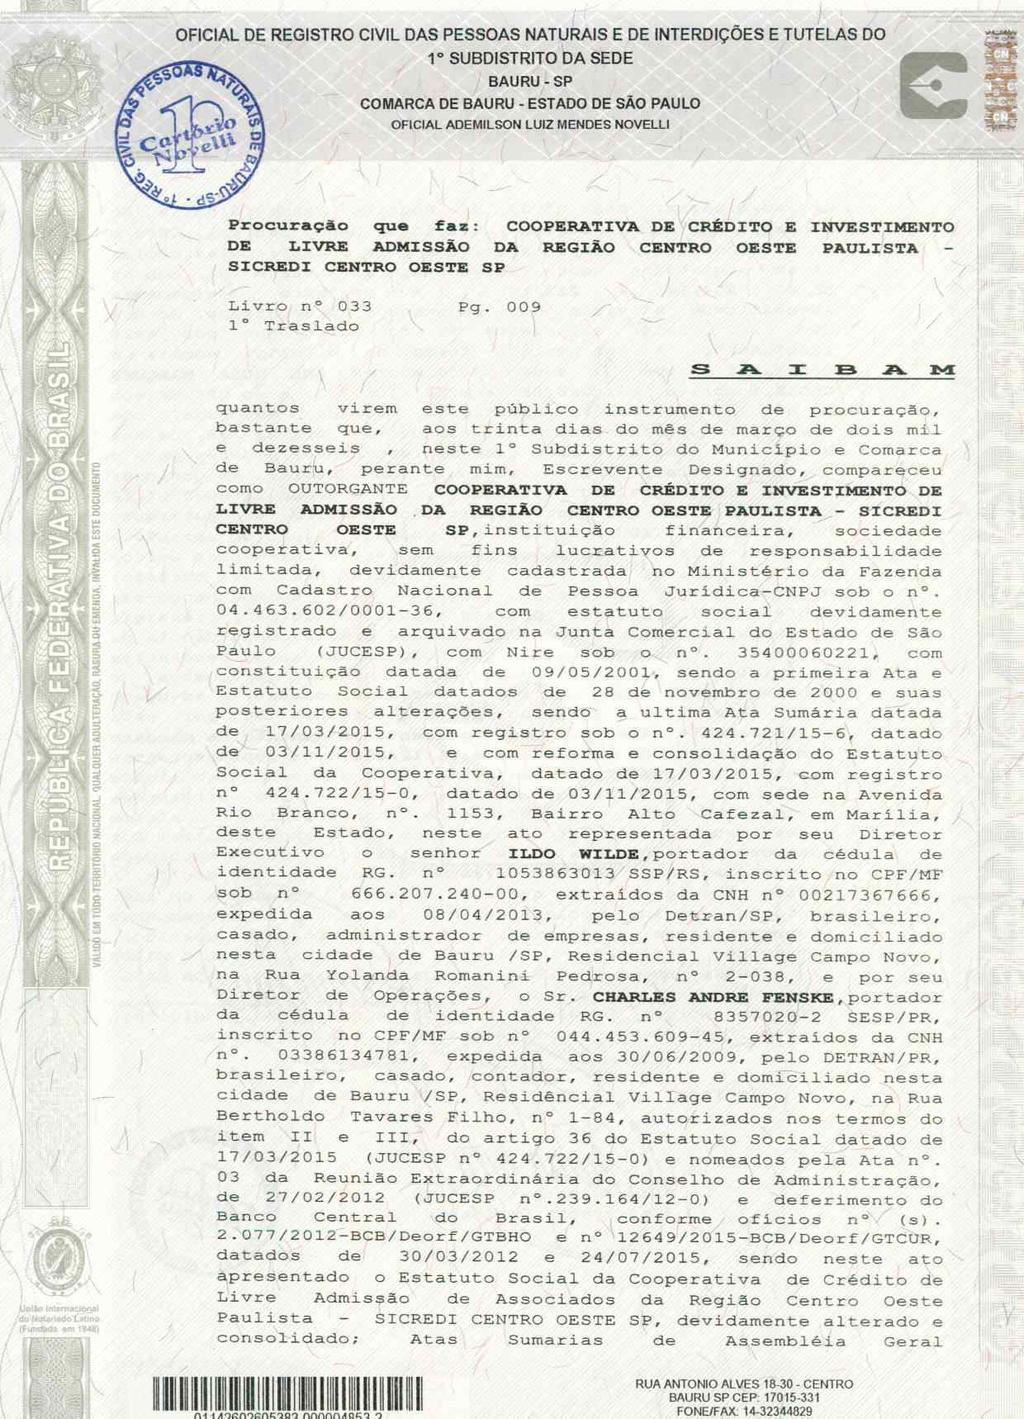 fls. 5 Este documento é cópia do original, assinado digitalmente por ANA ROSA MARQUES CROCE e Tribunal de Justica do Estado de Sao Paulo, protocolado em 30/01/2017 às 20:23, sob o número